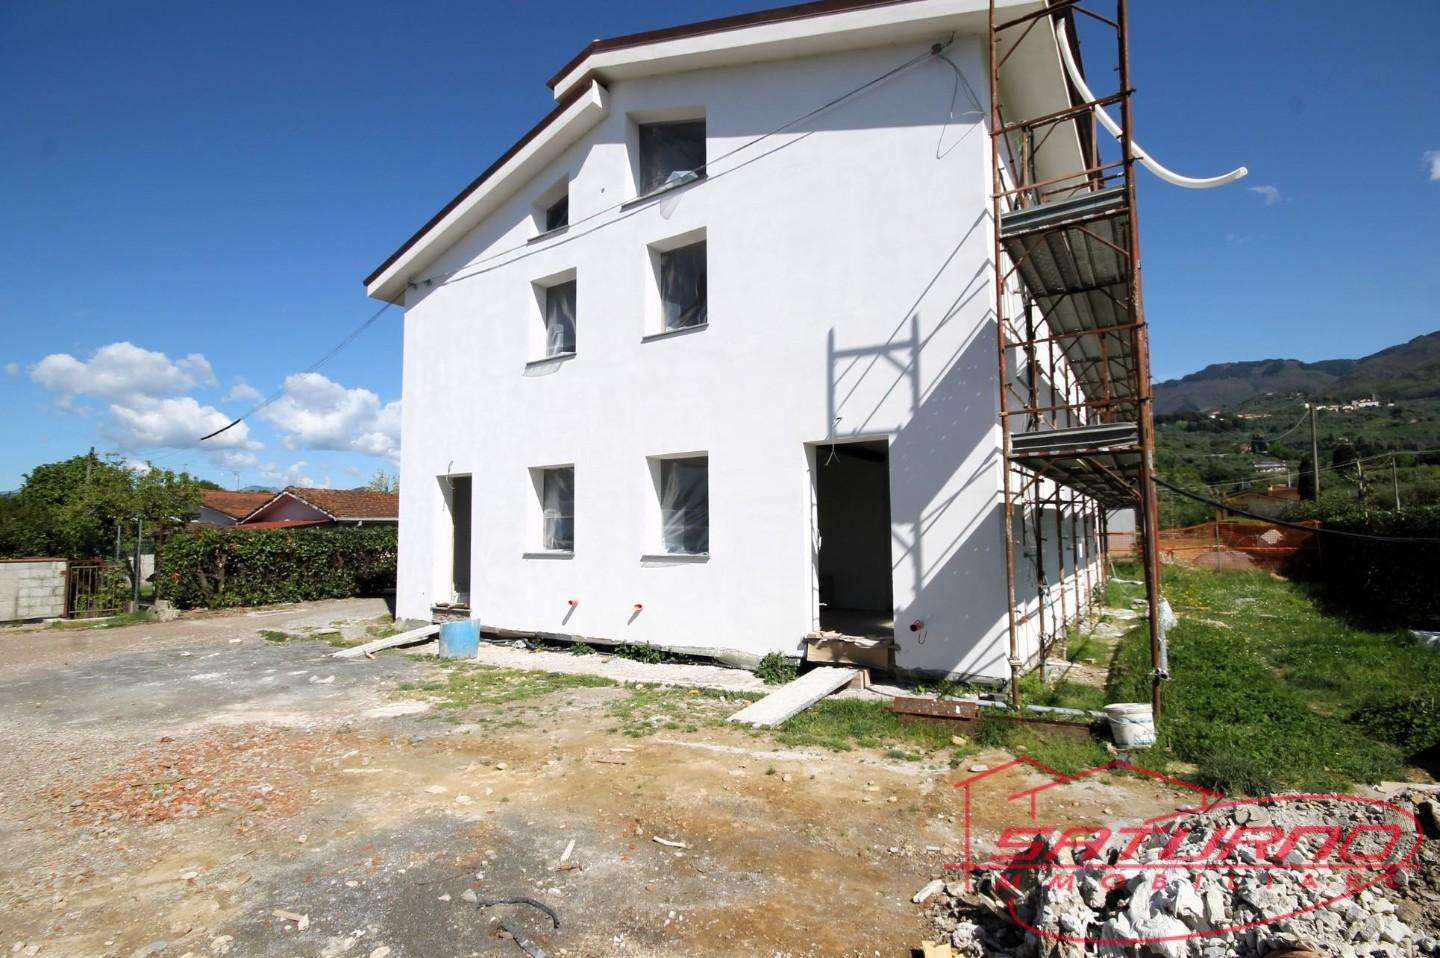 Casa Bi - Trifamiliare in Vendita a Capannori Marlia Villa Reale, 55012